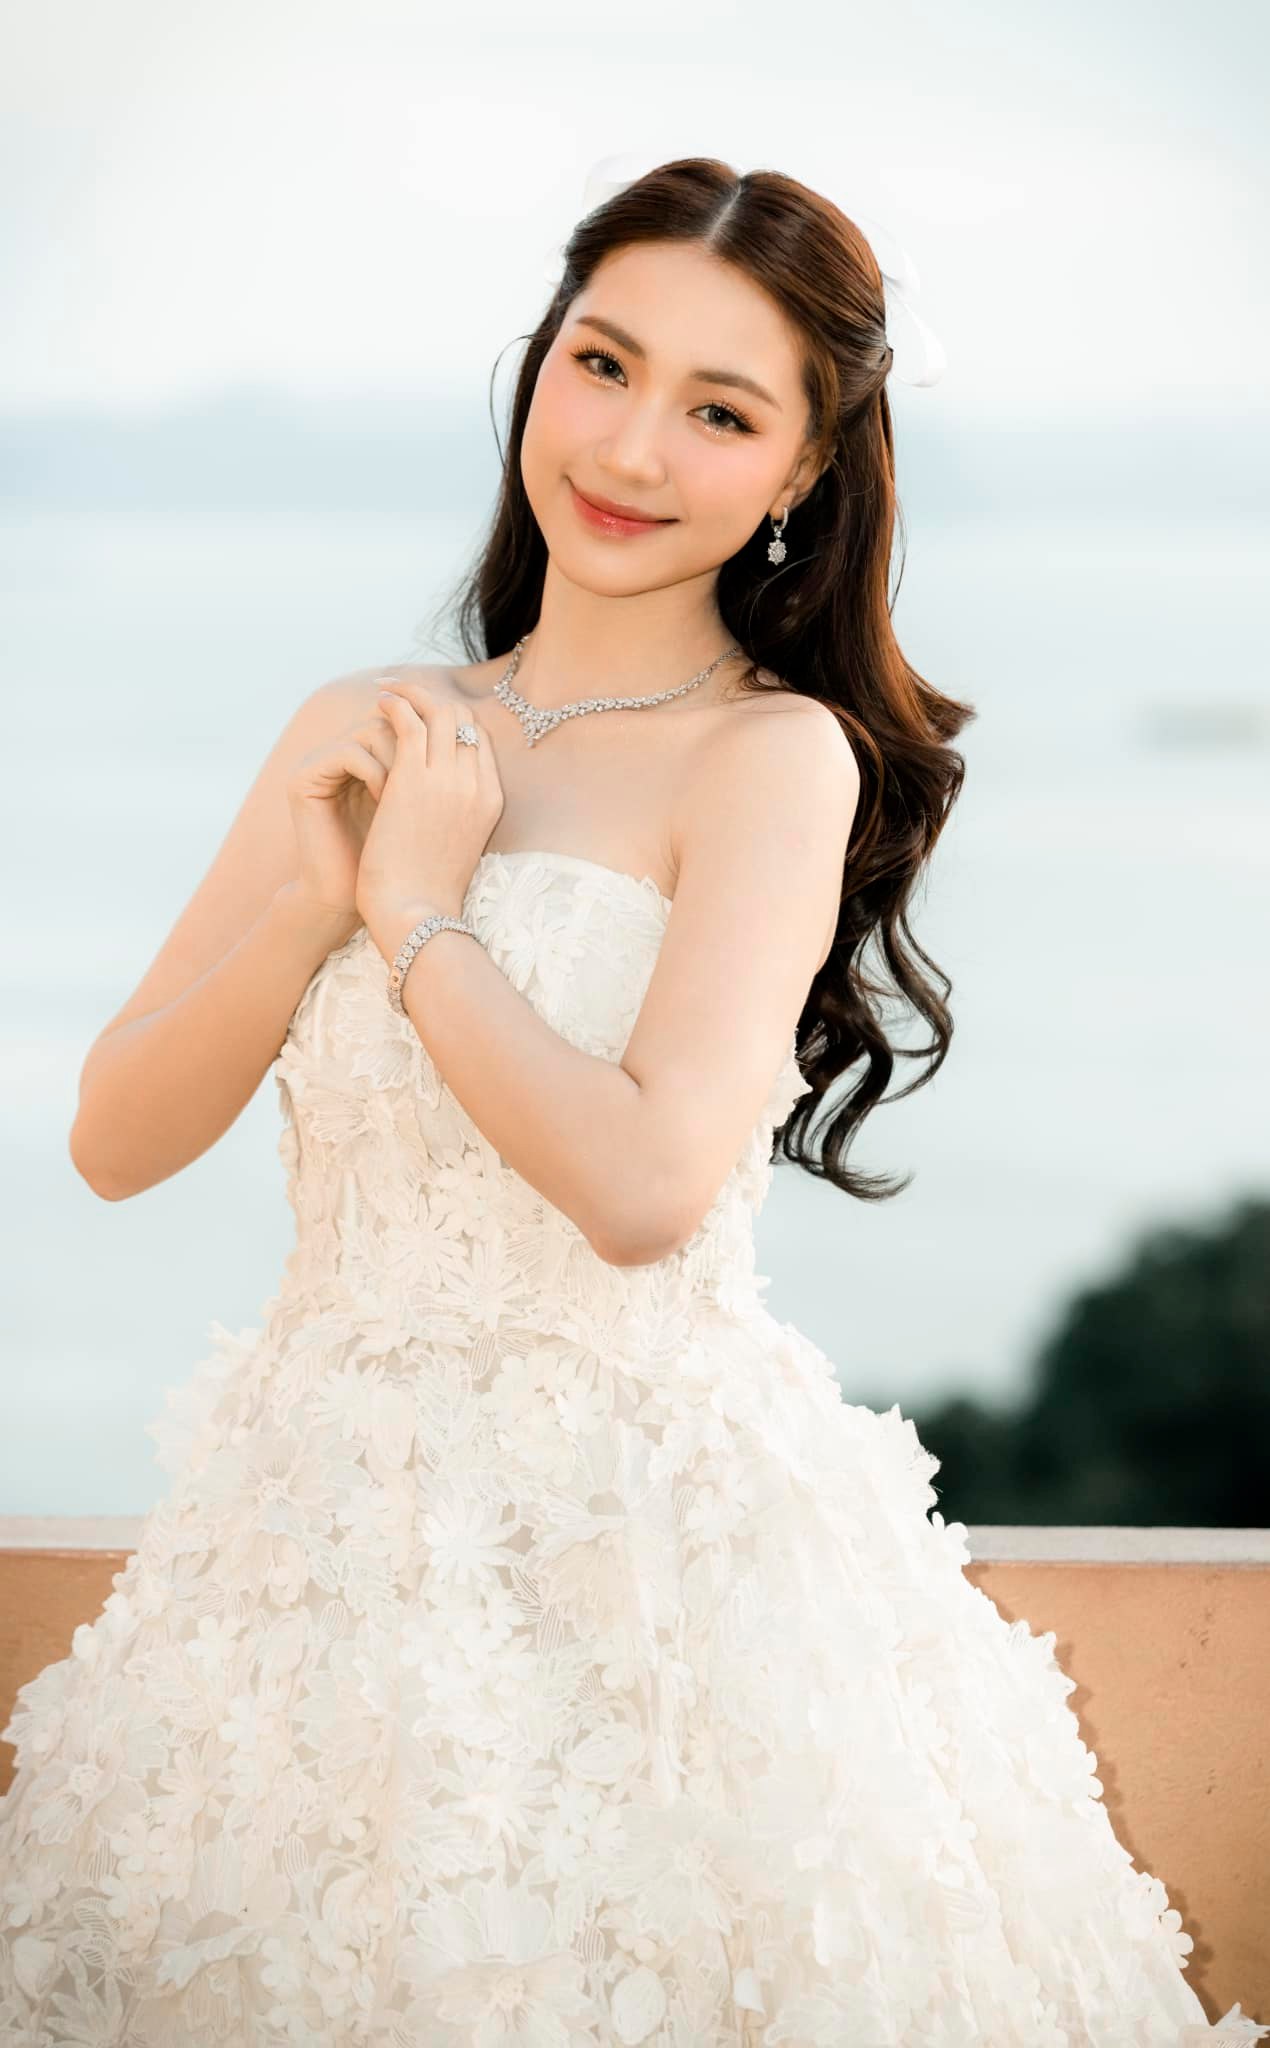 Hòa Minzy úp mở về đám cưới sau hôn lễ của Puka: 'Rồi ai cũng sẽ được khoác lên chiếc váy cưới của riêng mình' - ảnh 5